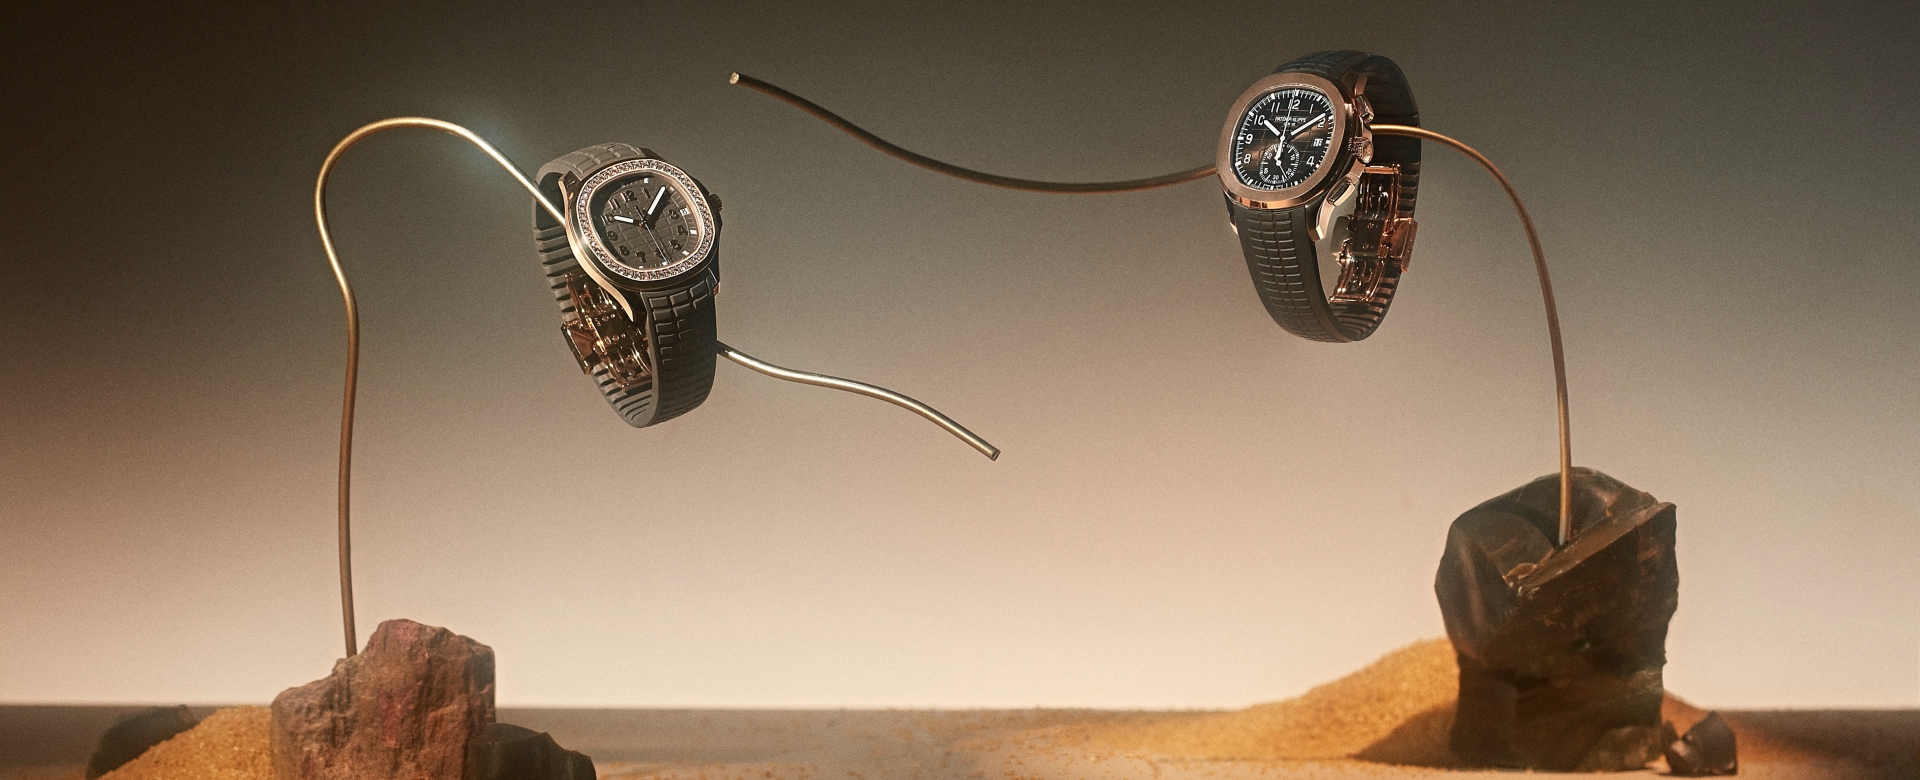 Bộ ảnh đồng hồ Patek Philippe – Tái hiện vẻ đẹp vĩnh cửu của thời gian